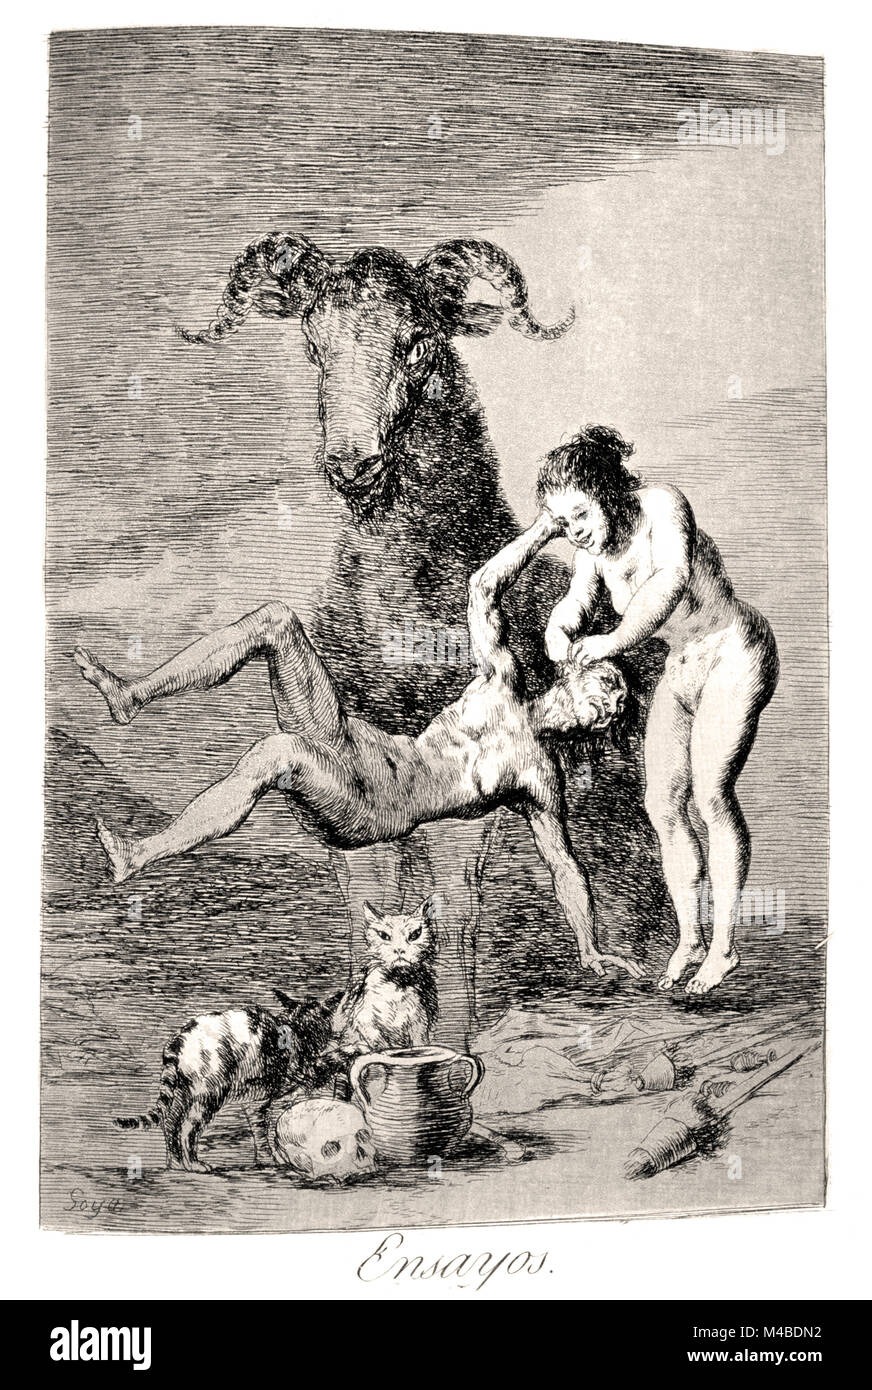 Francisco de Goya - Trials 1799. Plate 60 of Los caprichos. Stock Photo